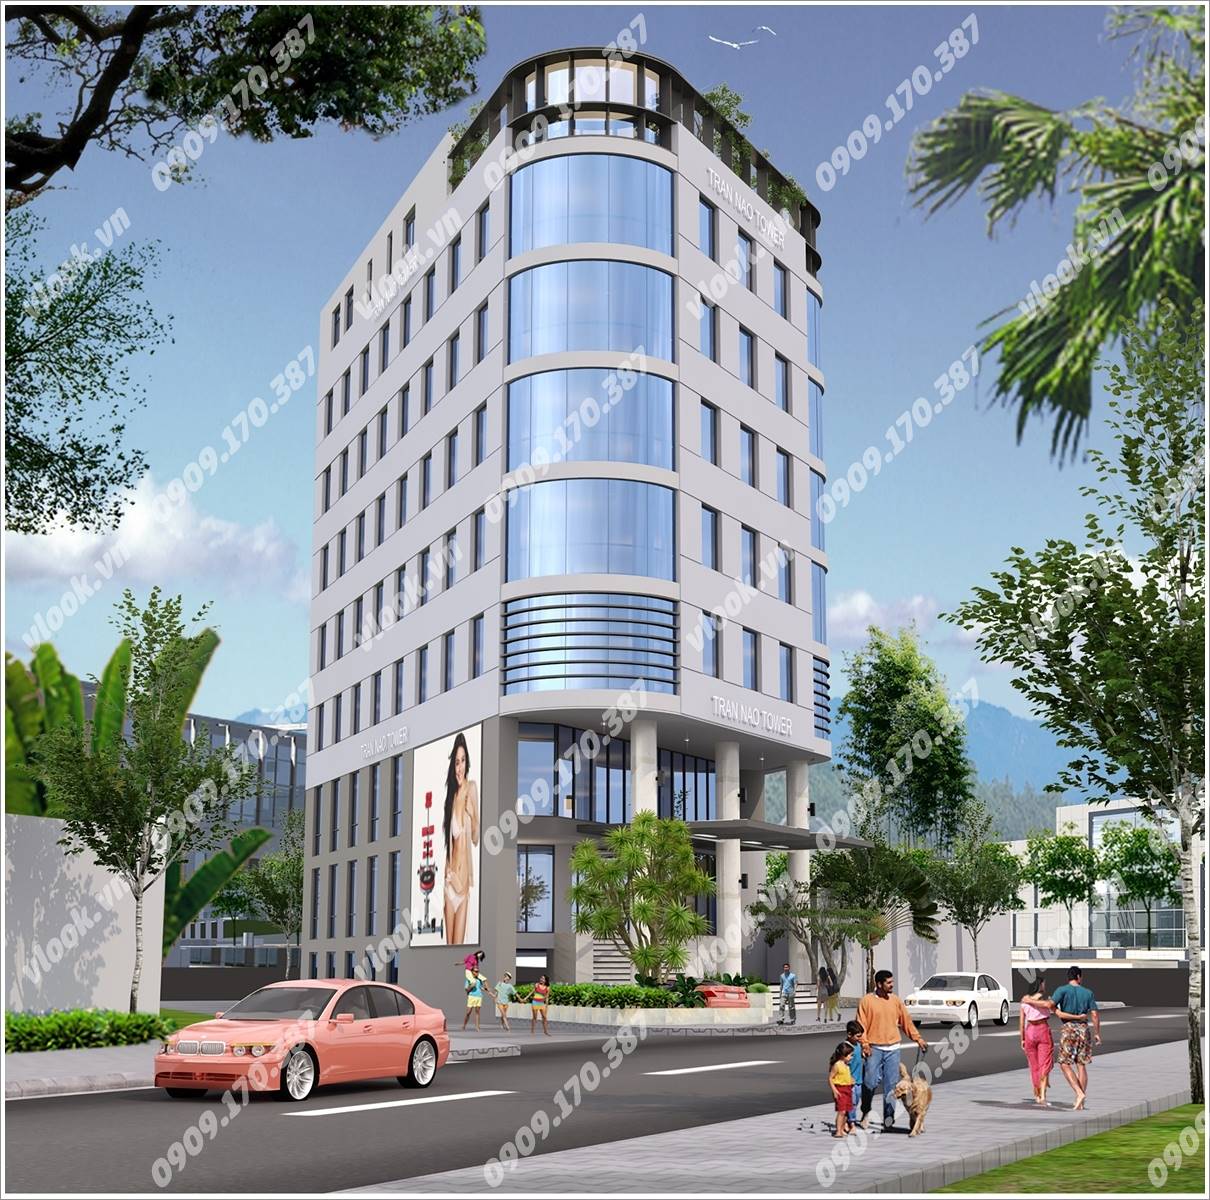 Cao ốc văn phòng cho thuê Trần Não Tower, Quận 2, TP.HCM - vlook.vn